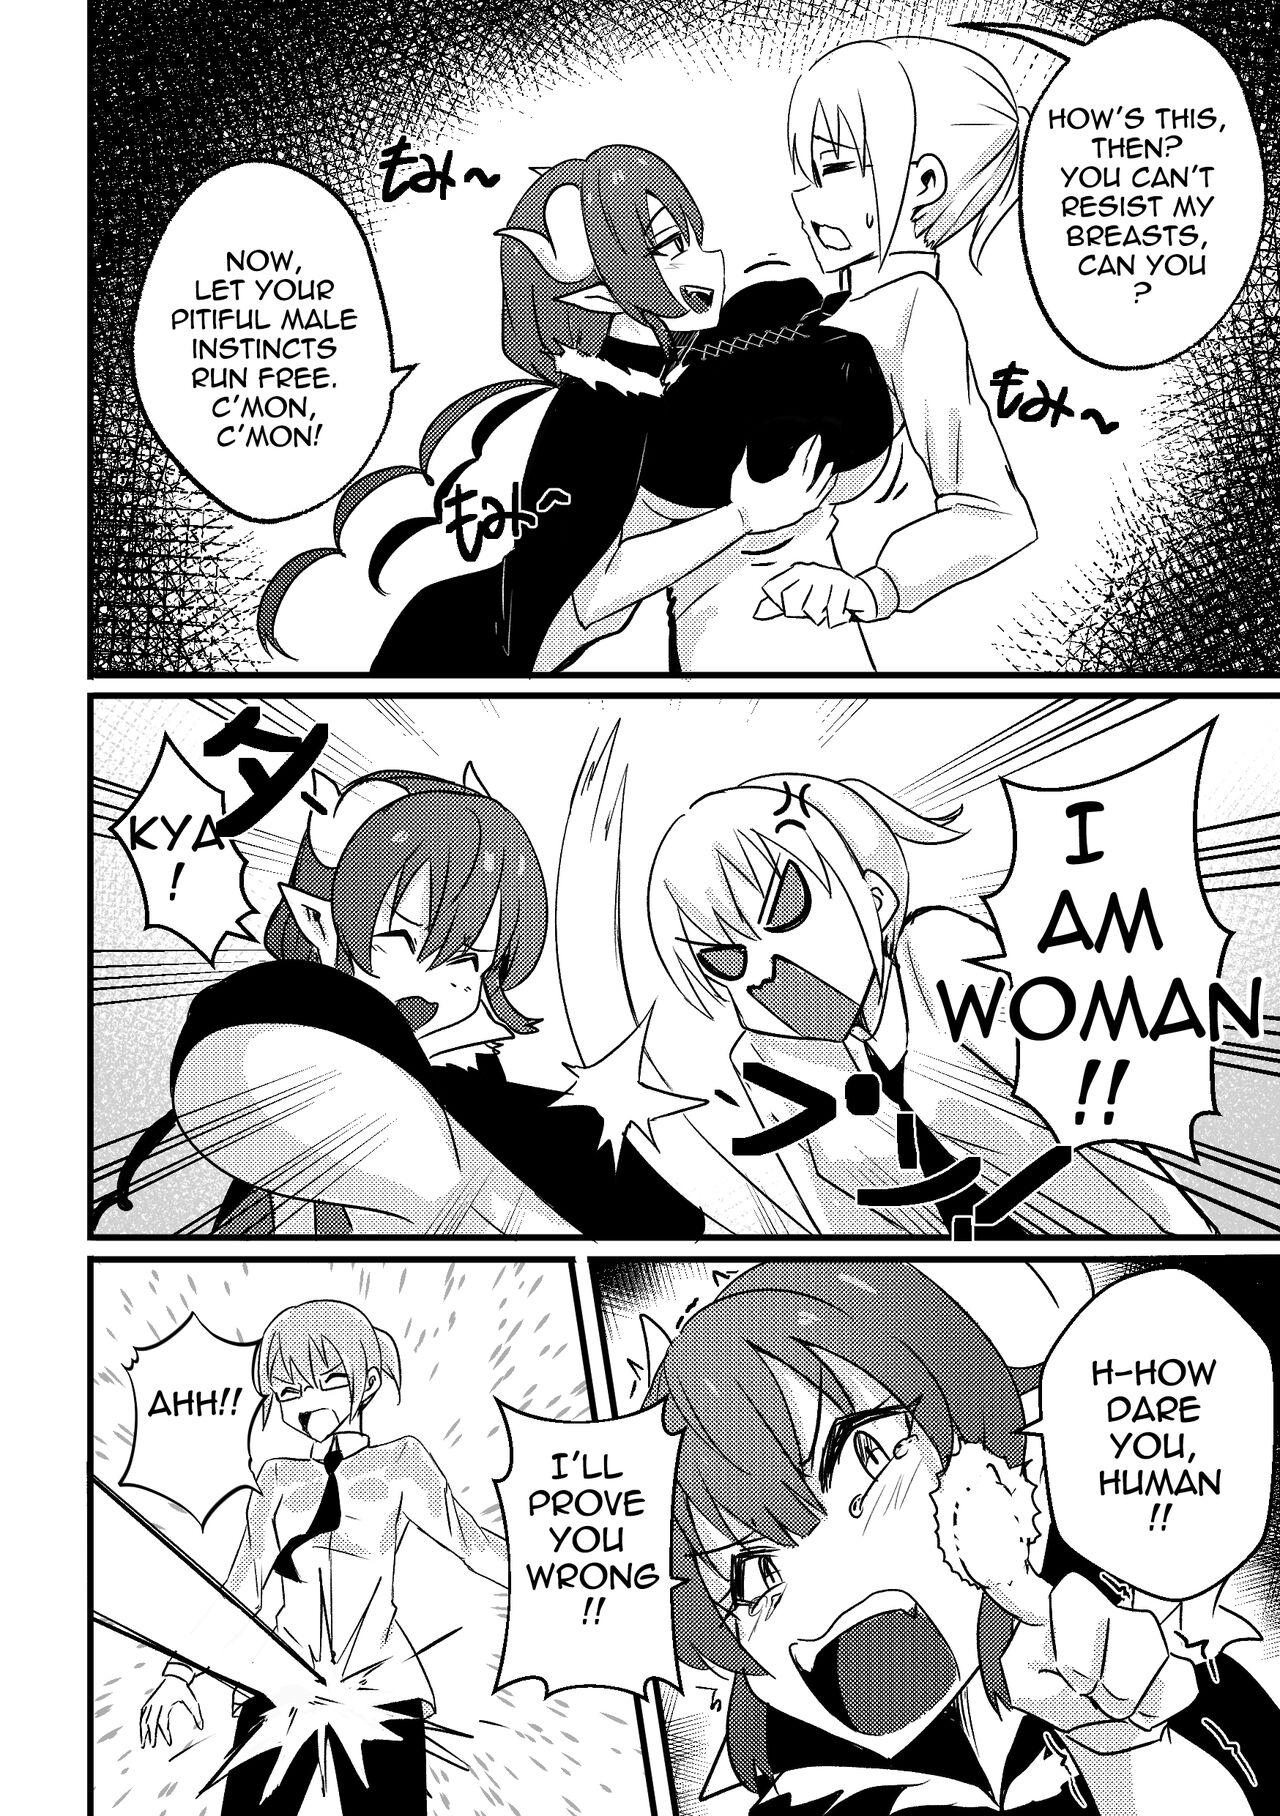 Rebolando [Merkonig] ILULU WA MAKETA (Censored) EN - Kobayashi san chi no maid dragon Brunette - Page 3